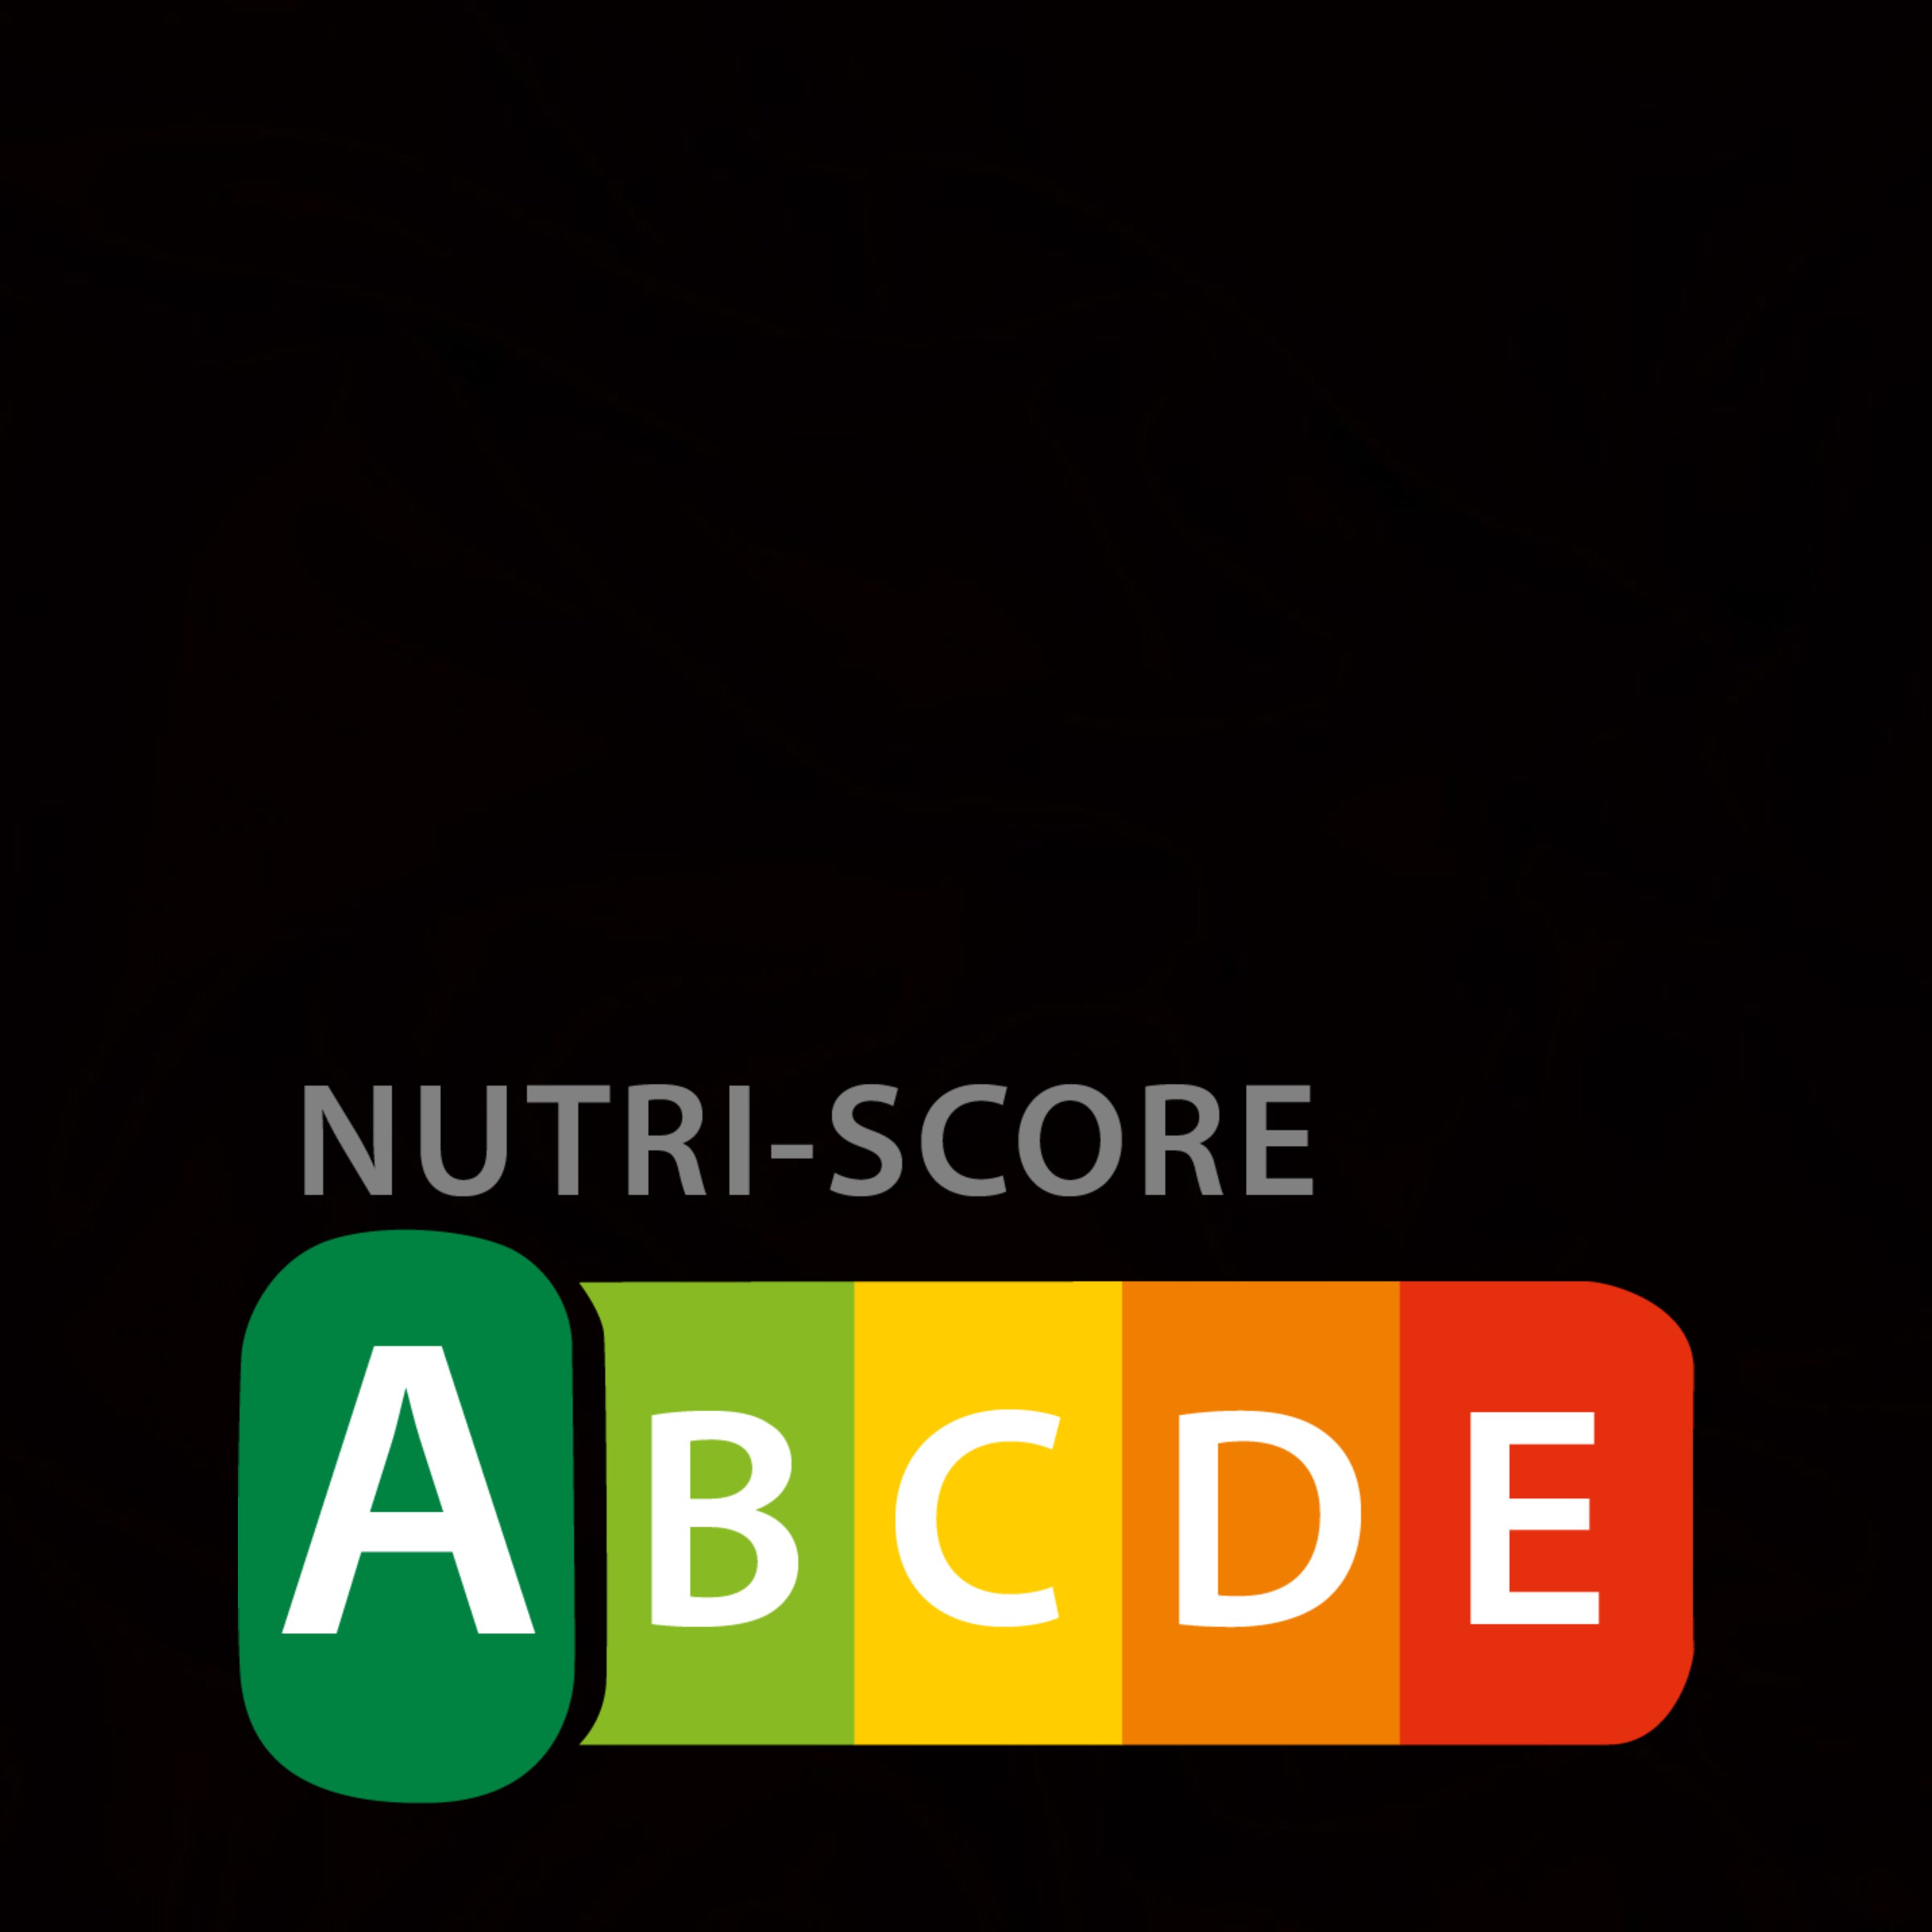 Conoce Nutriscore, el nuevo semáforo nutricional que etiqueta los alimentos